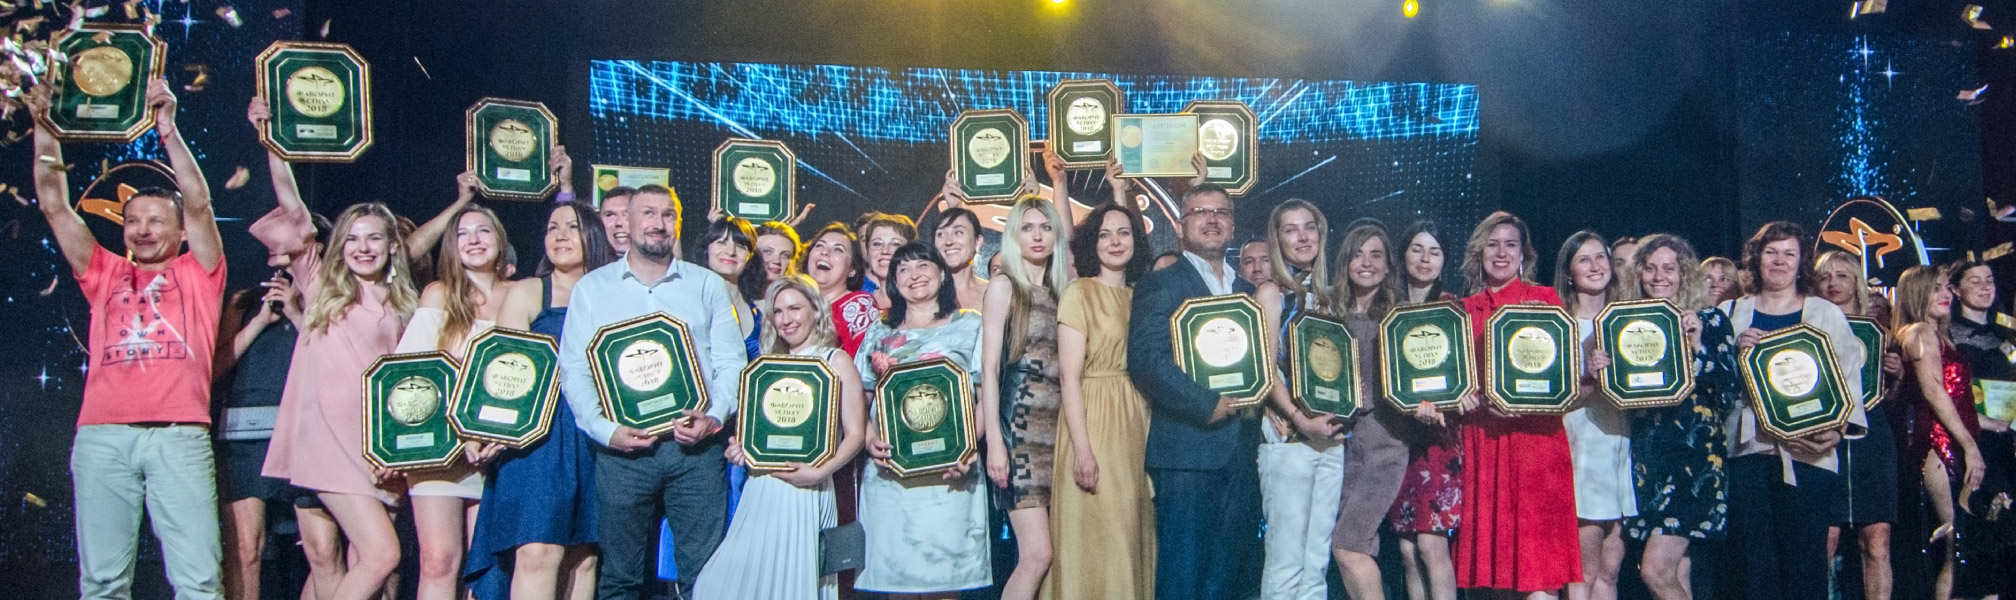 Победители конкурса «Фавориты Успеха – 2018» — финал шоу награждения